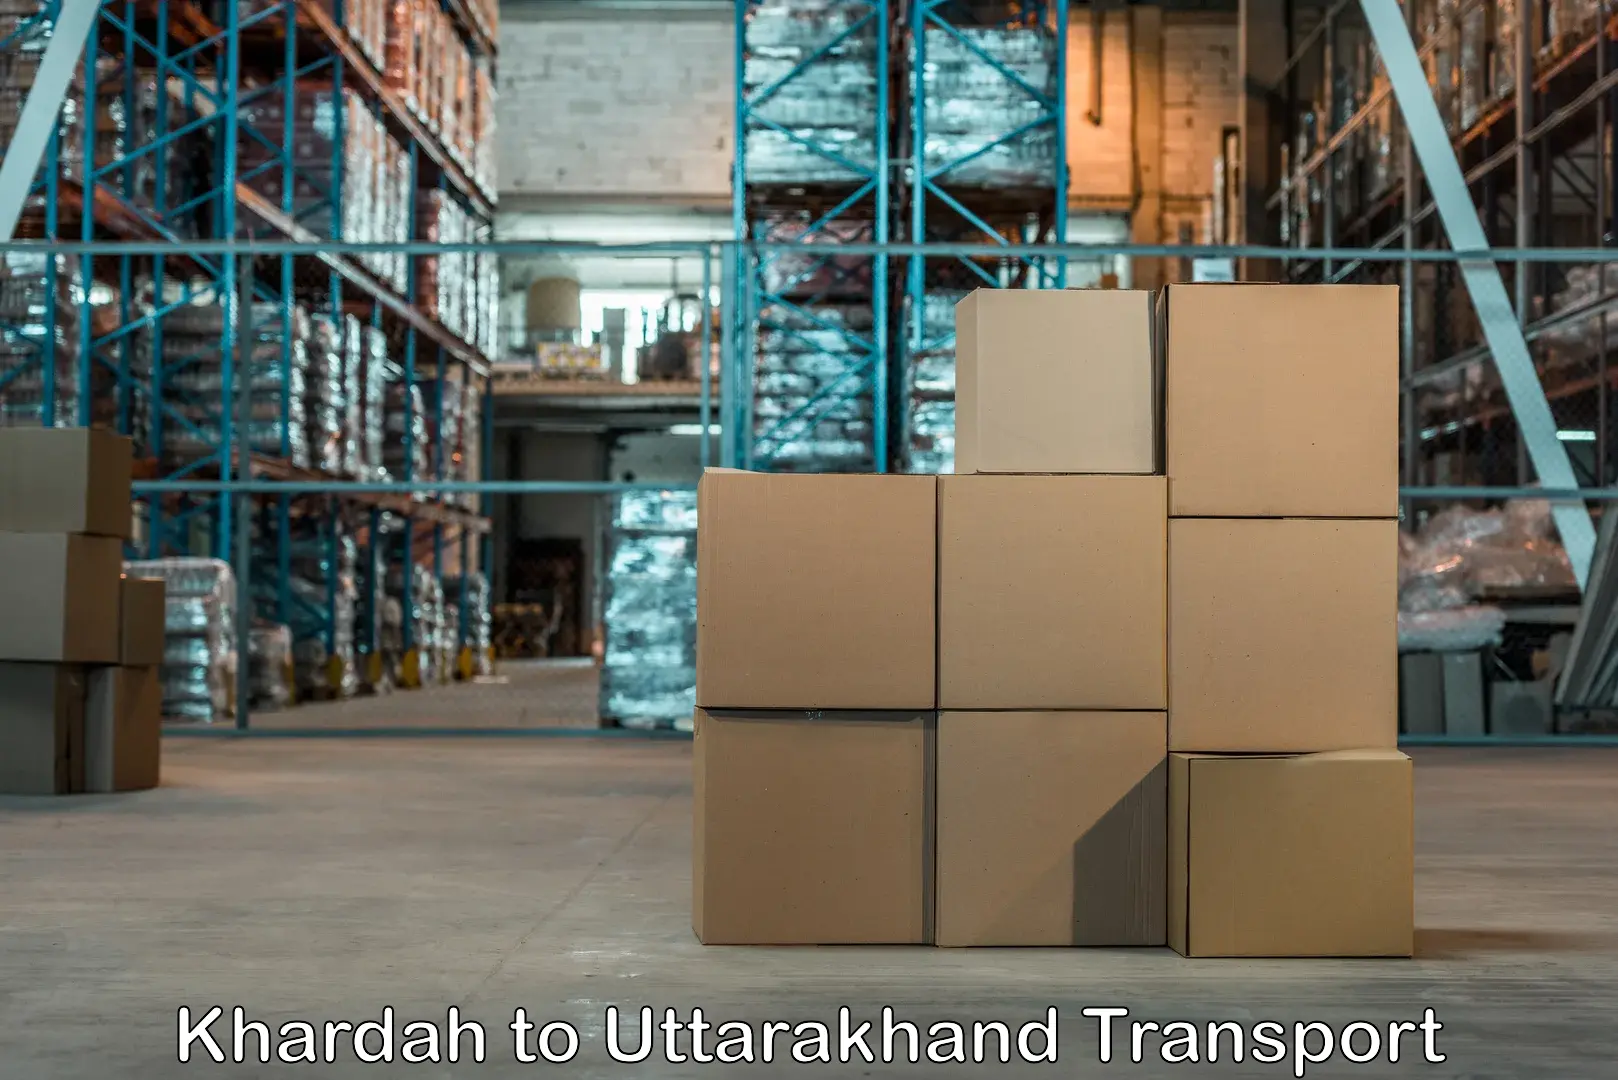 Furniture transport service in Khardah to Uttarakhand